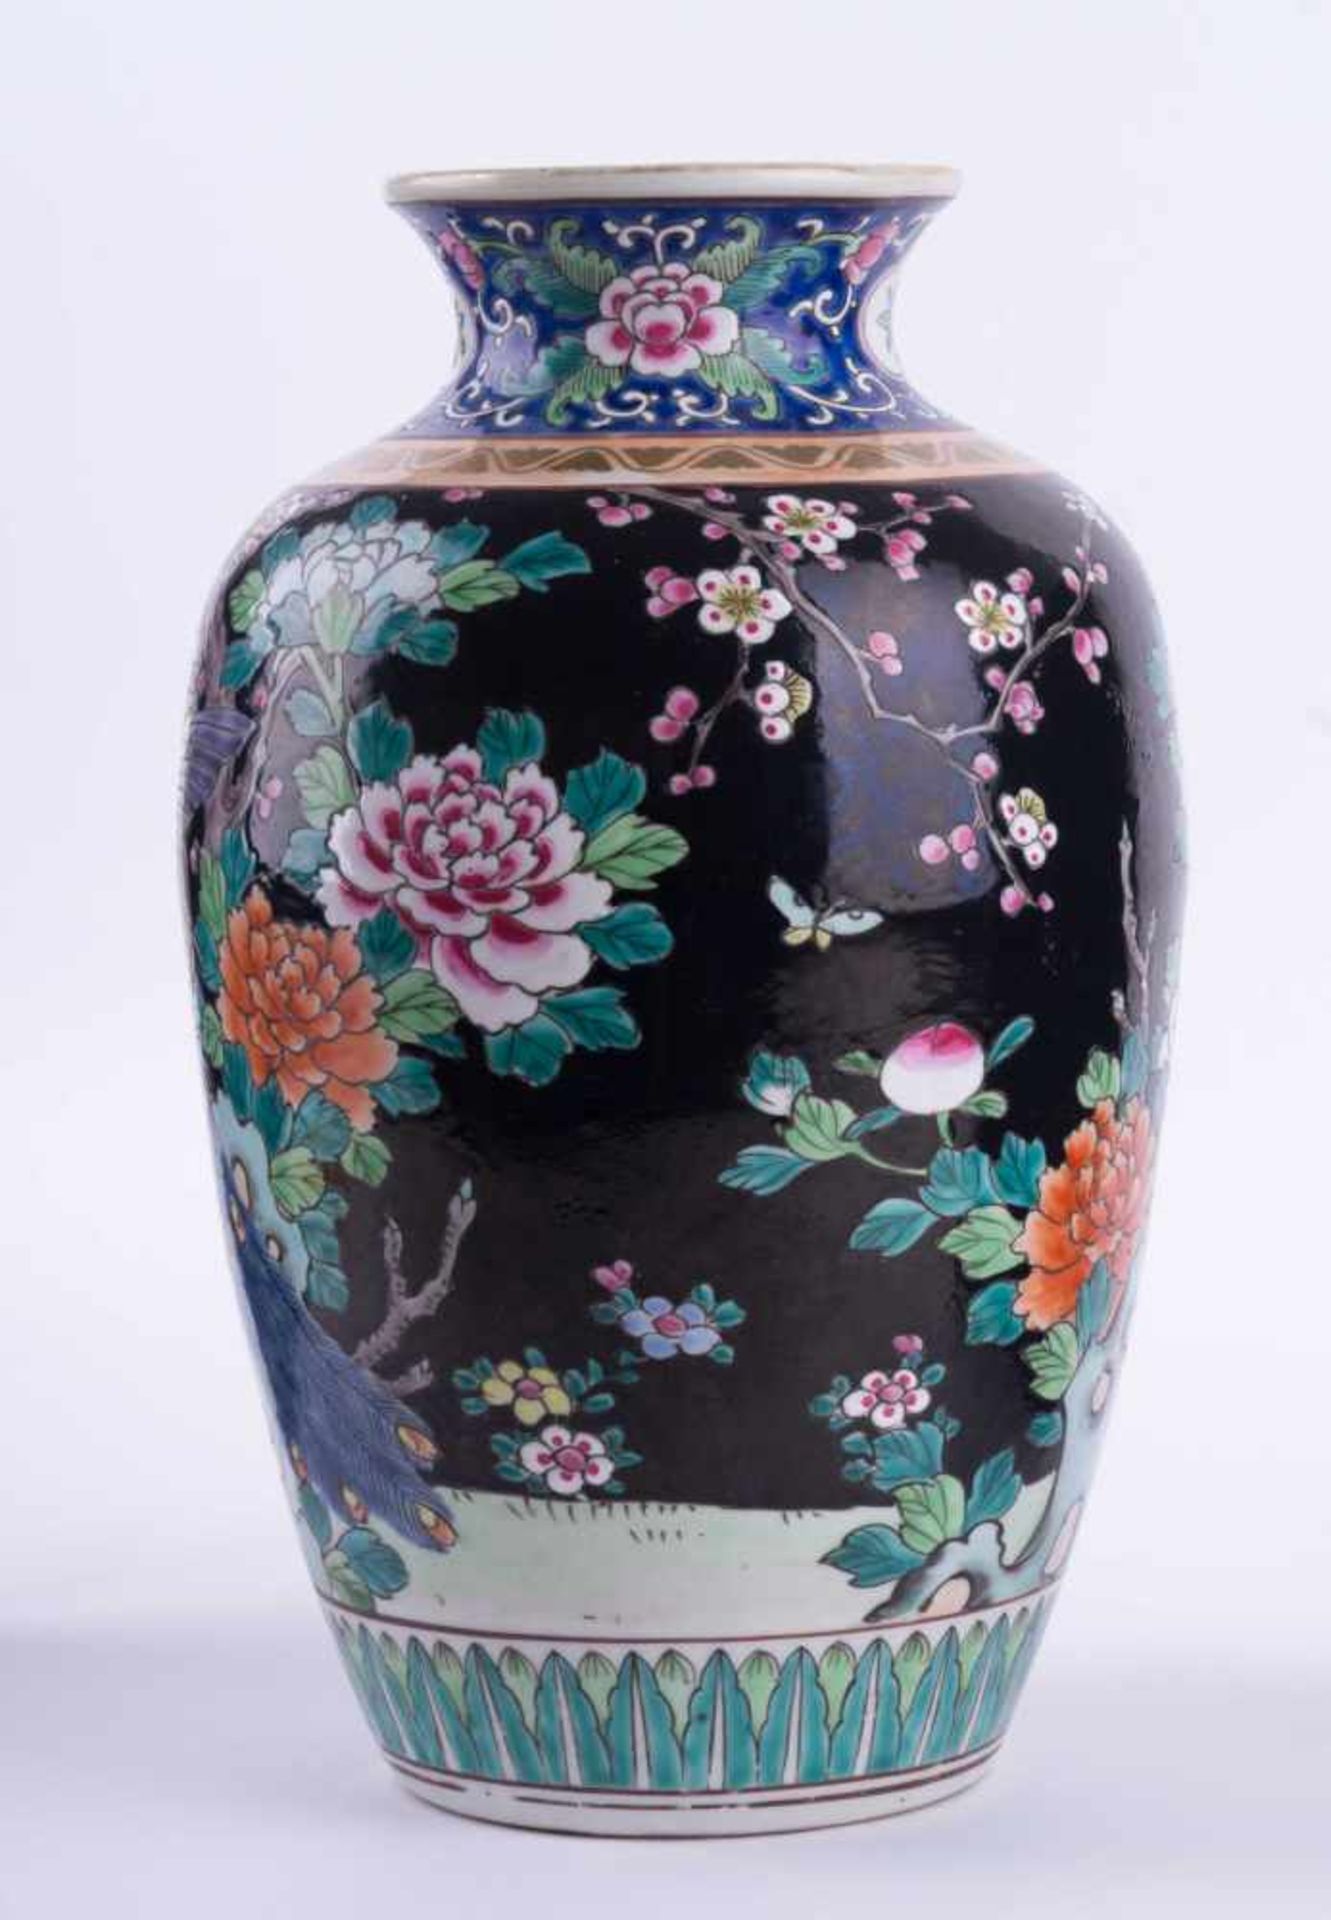 Vase China Famille Verte 19. Jhd. Emaille-Malerei mit Pfauen- und floralem Dekor, unterm Stand - Bild 2 aus 4